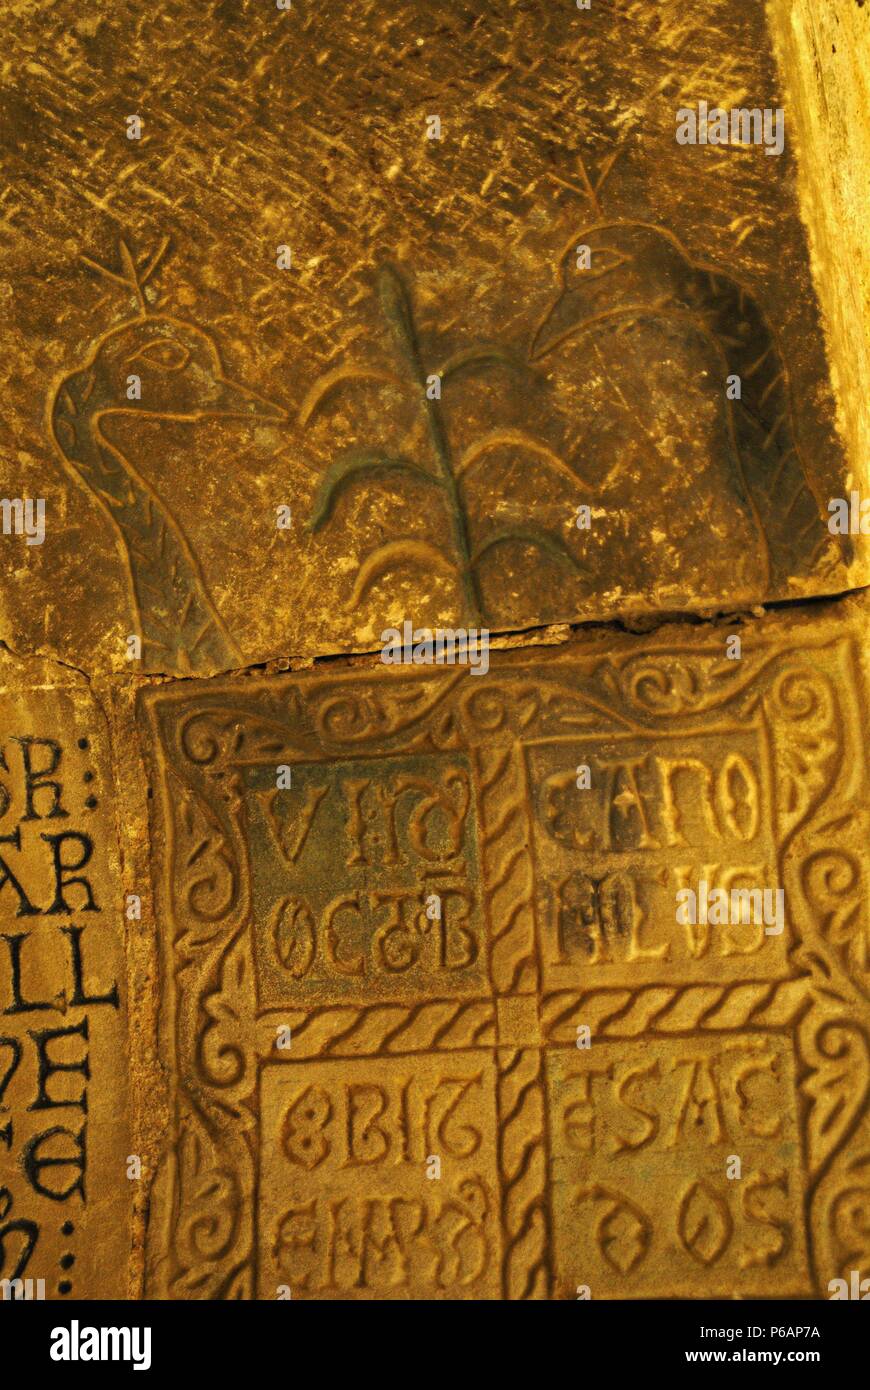 Epígrafes en el claustro.Catedral romanica de San Vicente(s.XI). Roda de Isábena.Aragón. España. Stock Photo